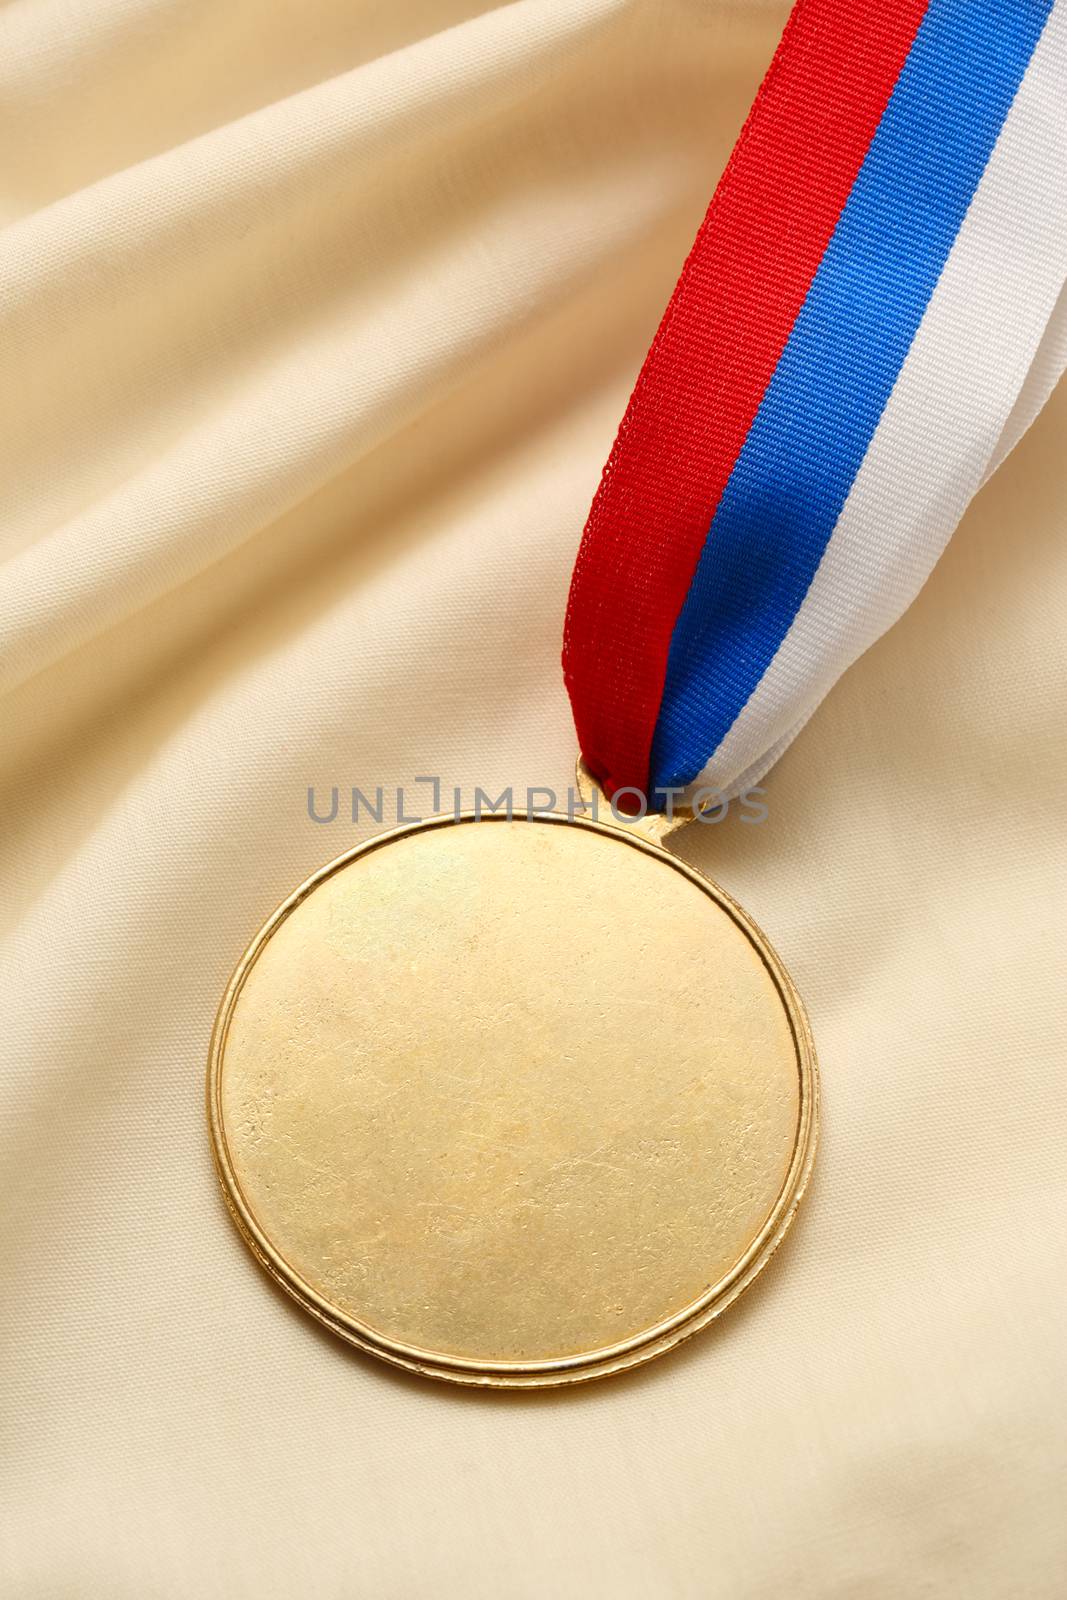 Blank metal medal by Garsya